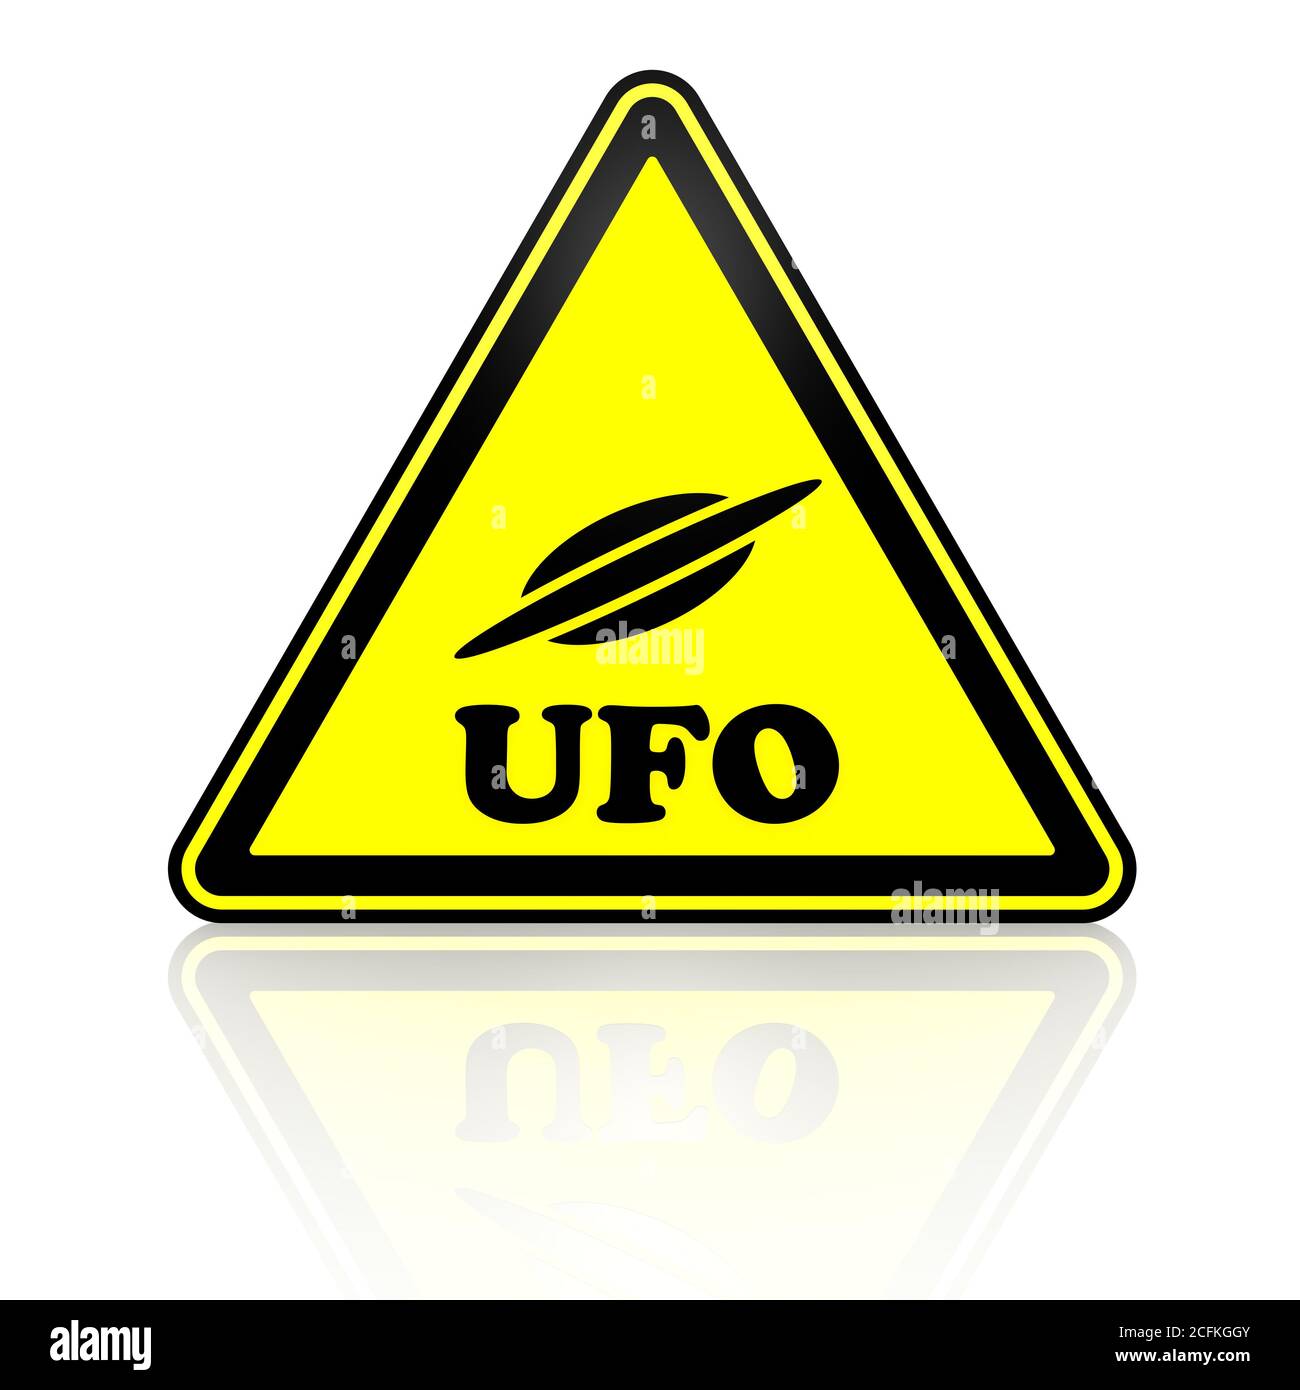 Warnschild mit fliegender Untertasse Symbol und Wort UFO (nicht identifiziertes fliegendes Objekt). 3D-Illustration Stockfoto